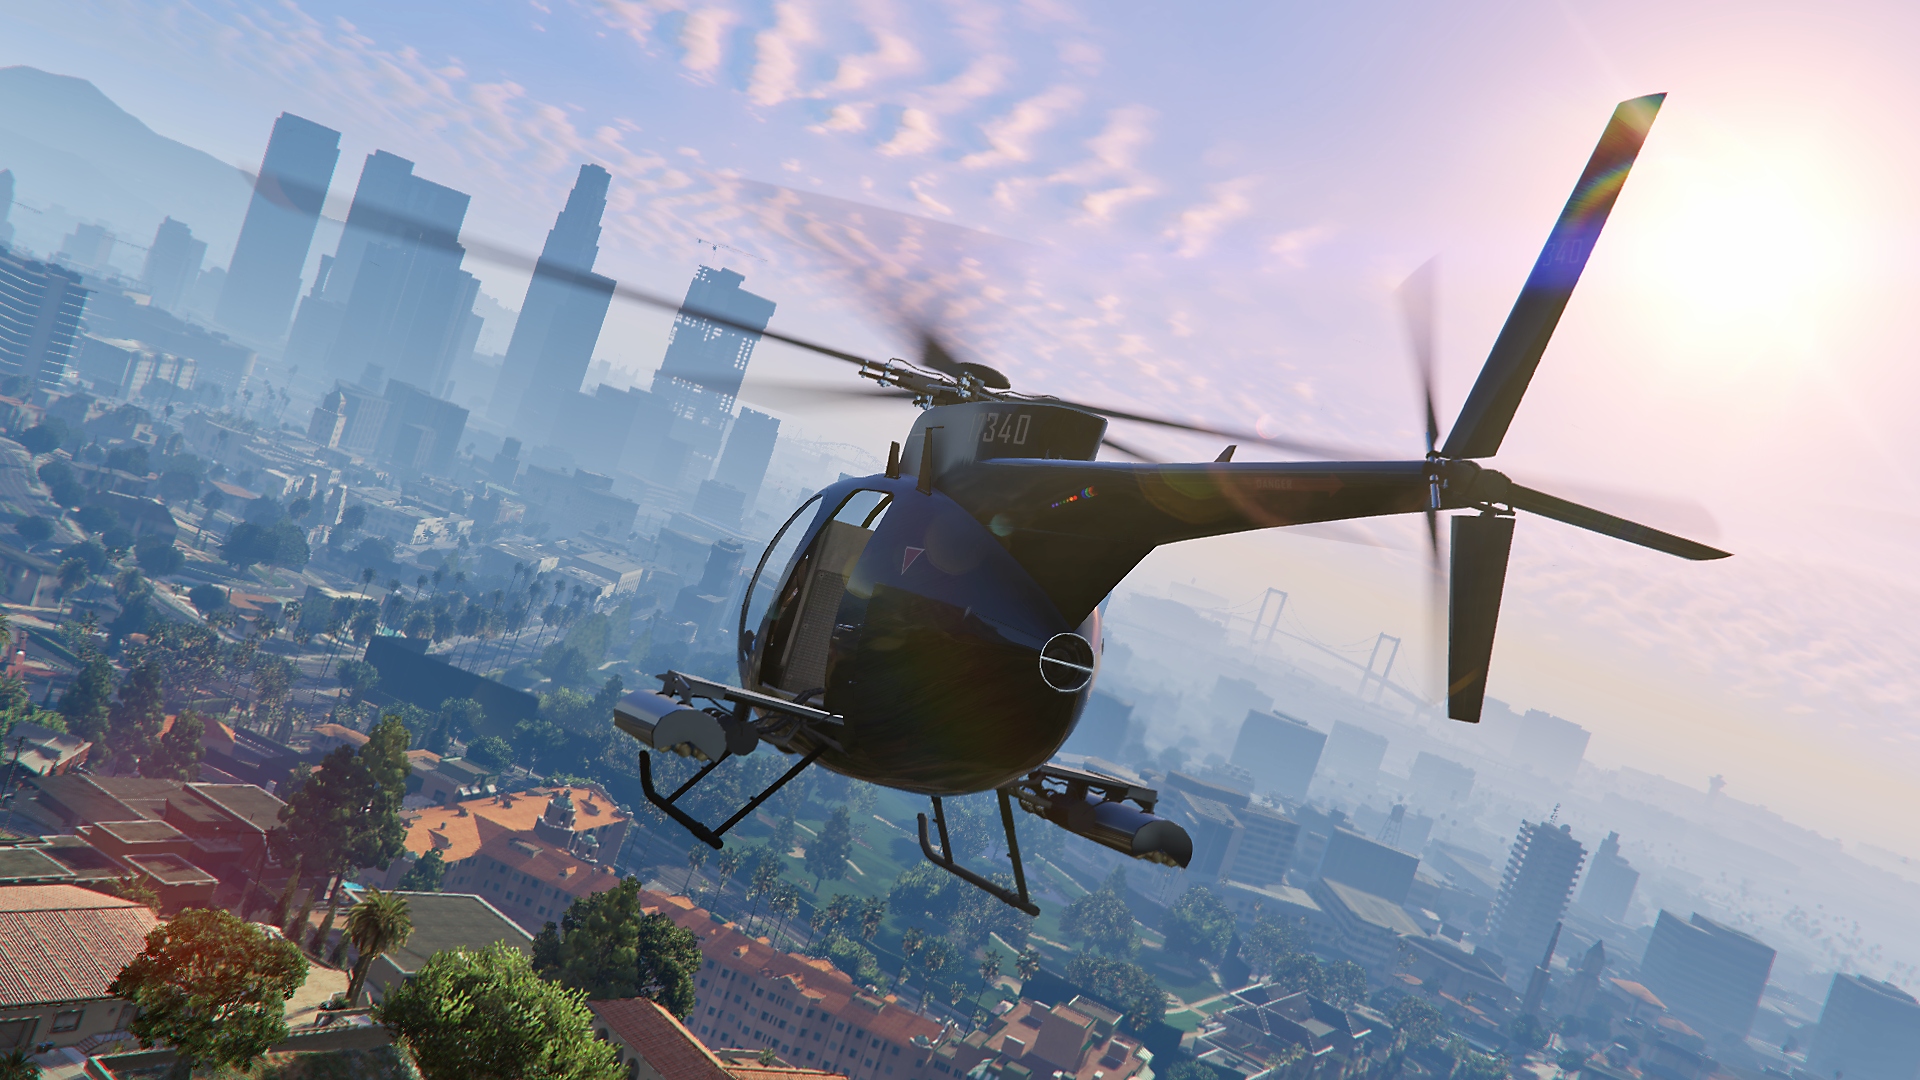 Captura de pantalla de Grand Theft Auto V con un helicóptero sobrevolando la ciudad con los edificios de fondo